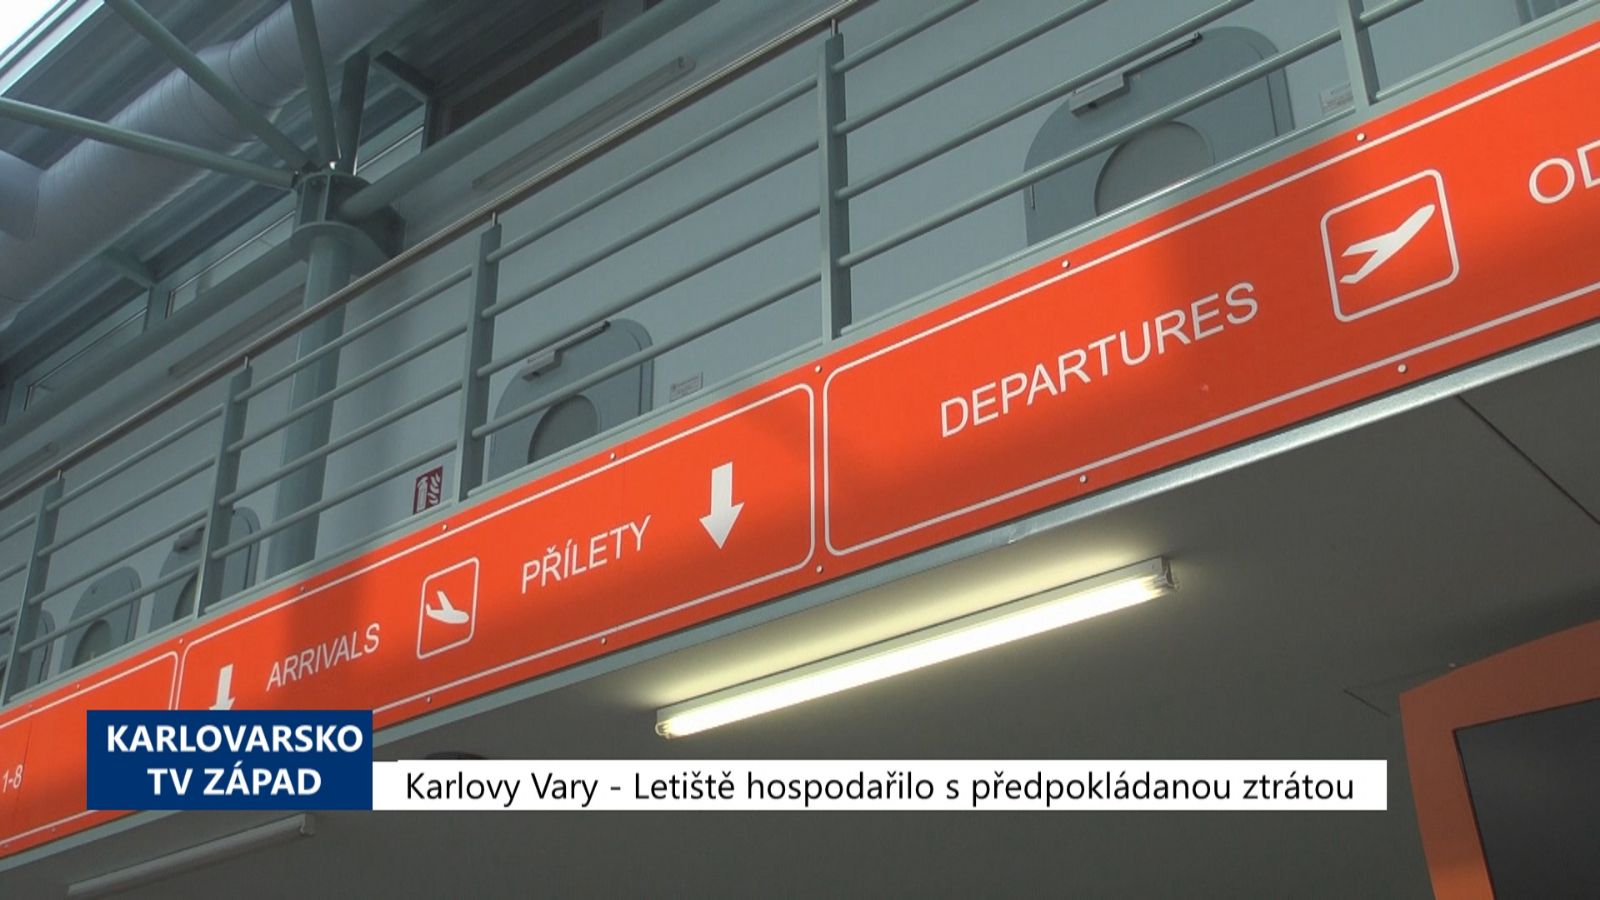 Karlovy Vary: Letiště hospodařilo s předpokládanou ztrátou (TV Západ)